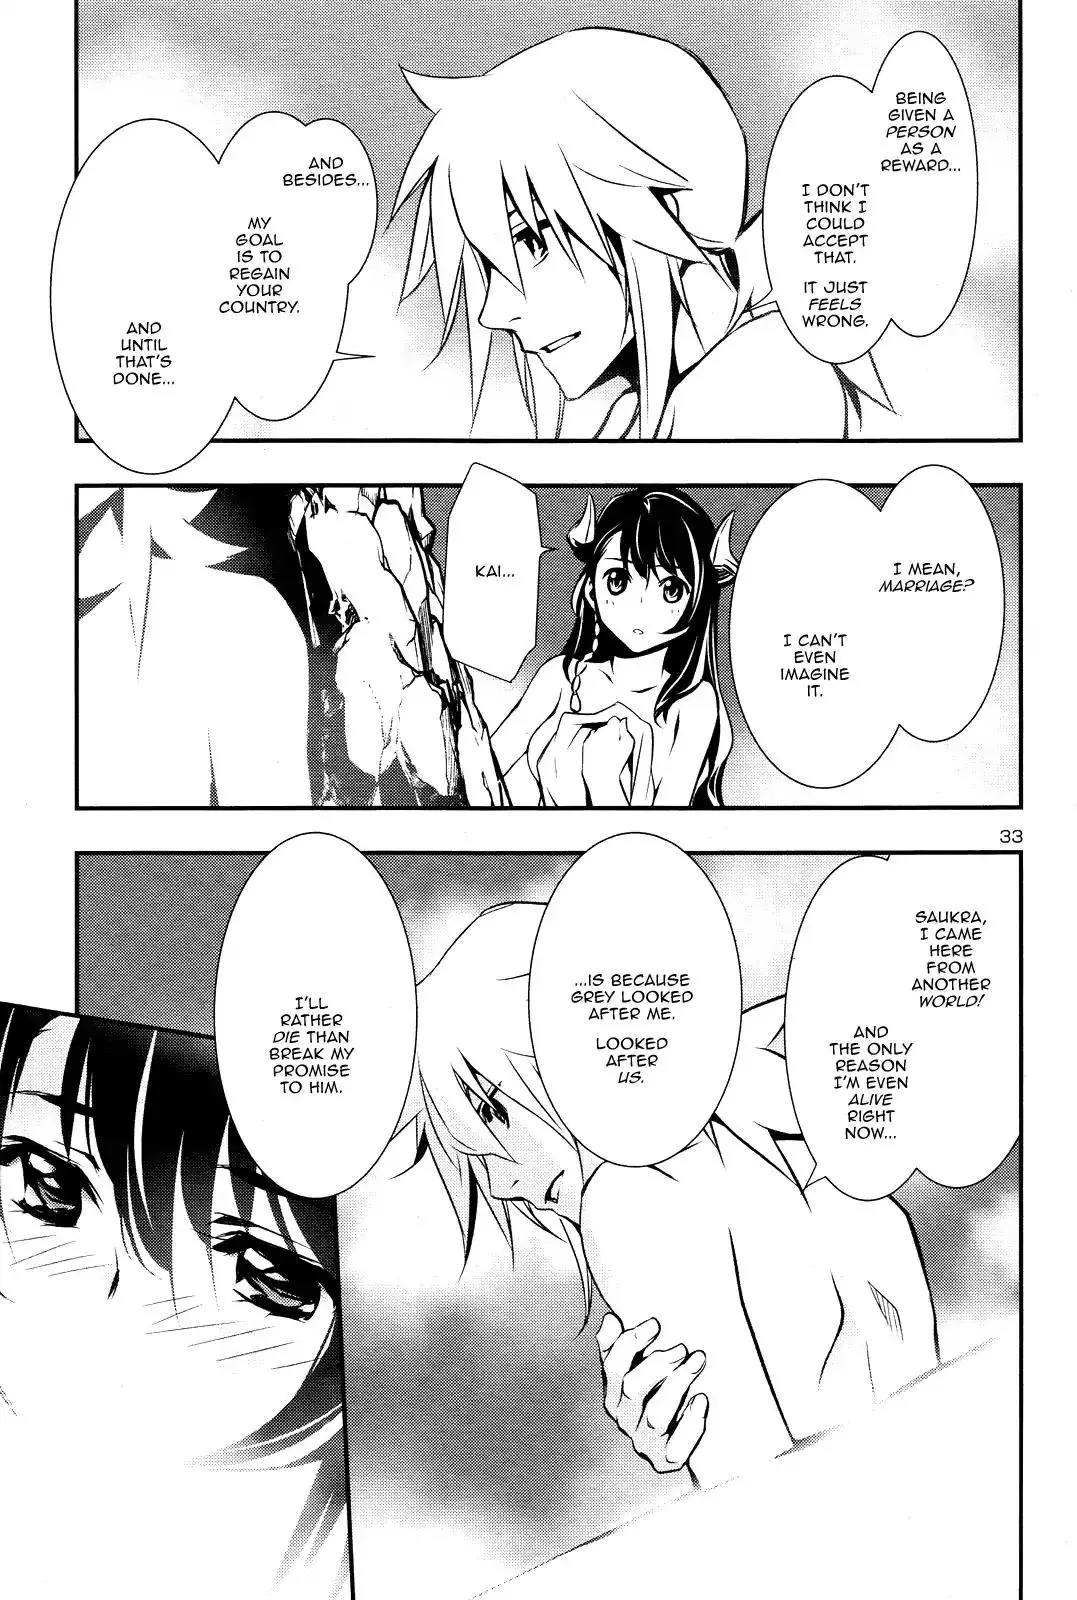 Shinju no Nectar - 13 page 31